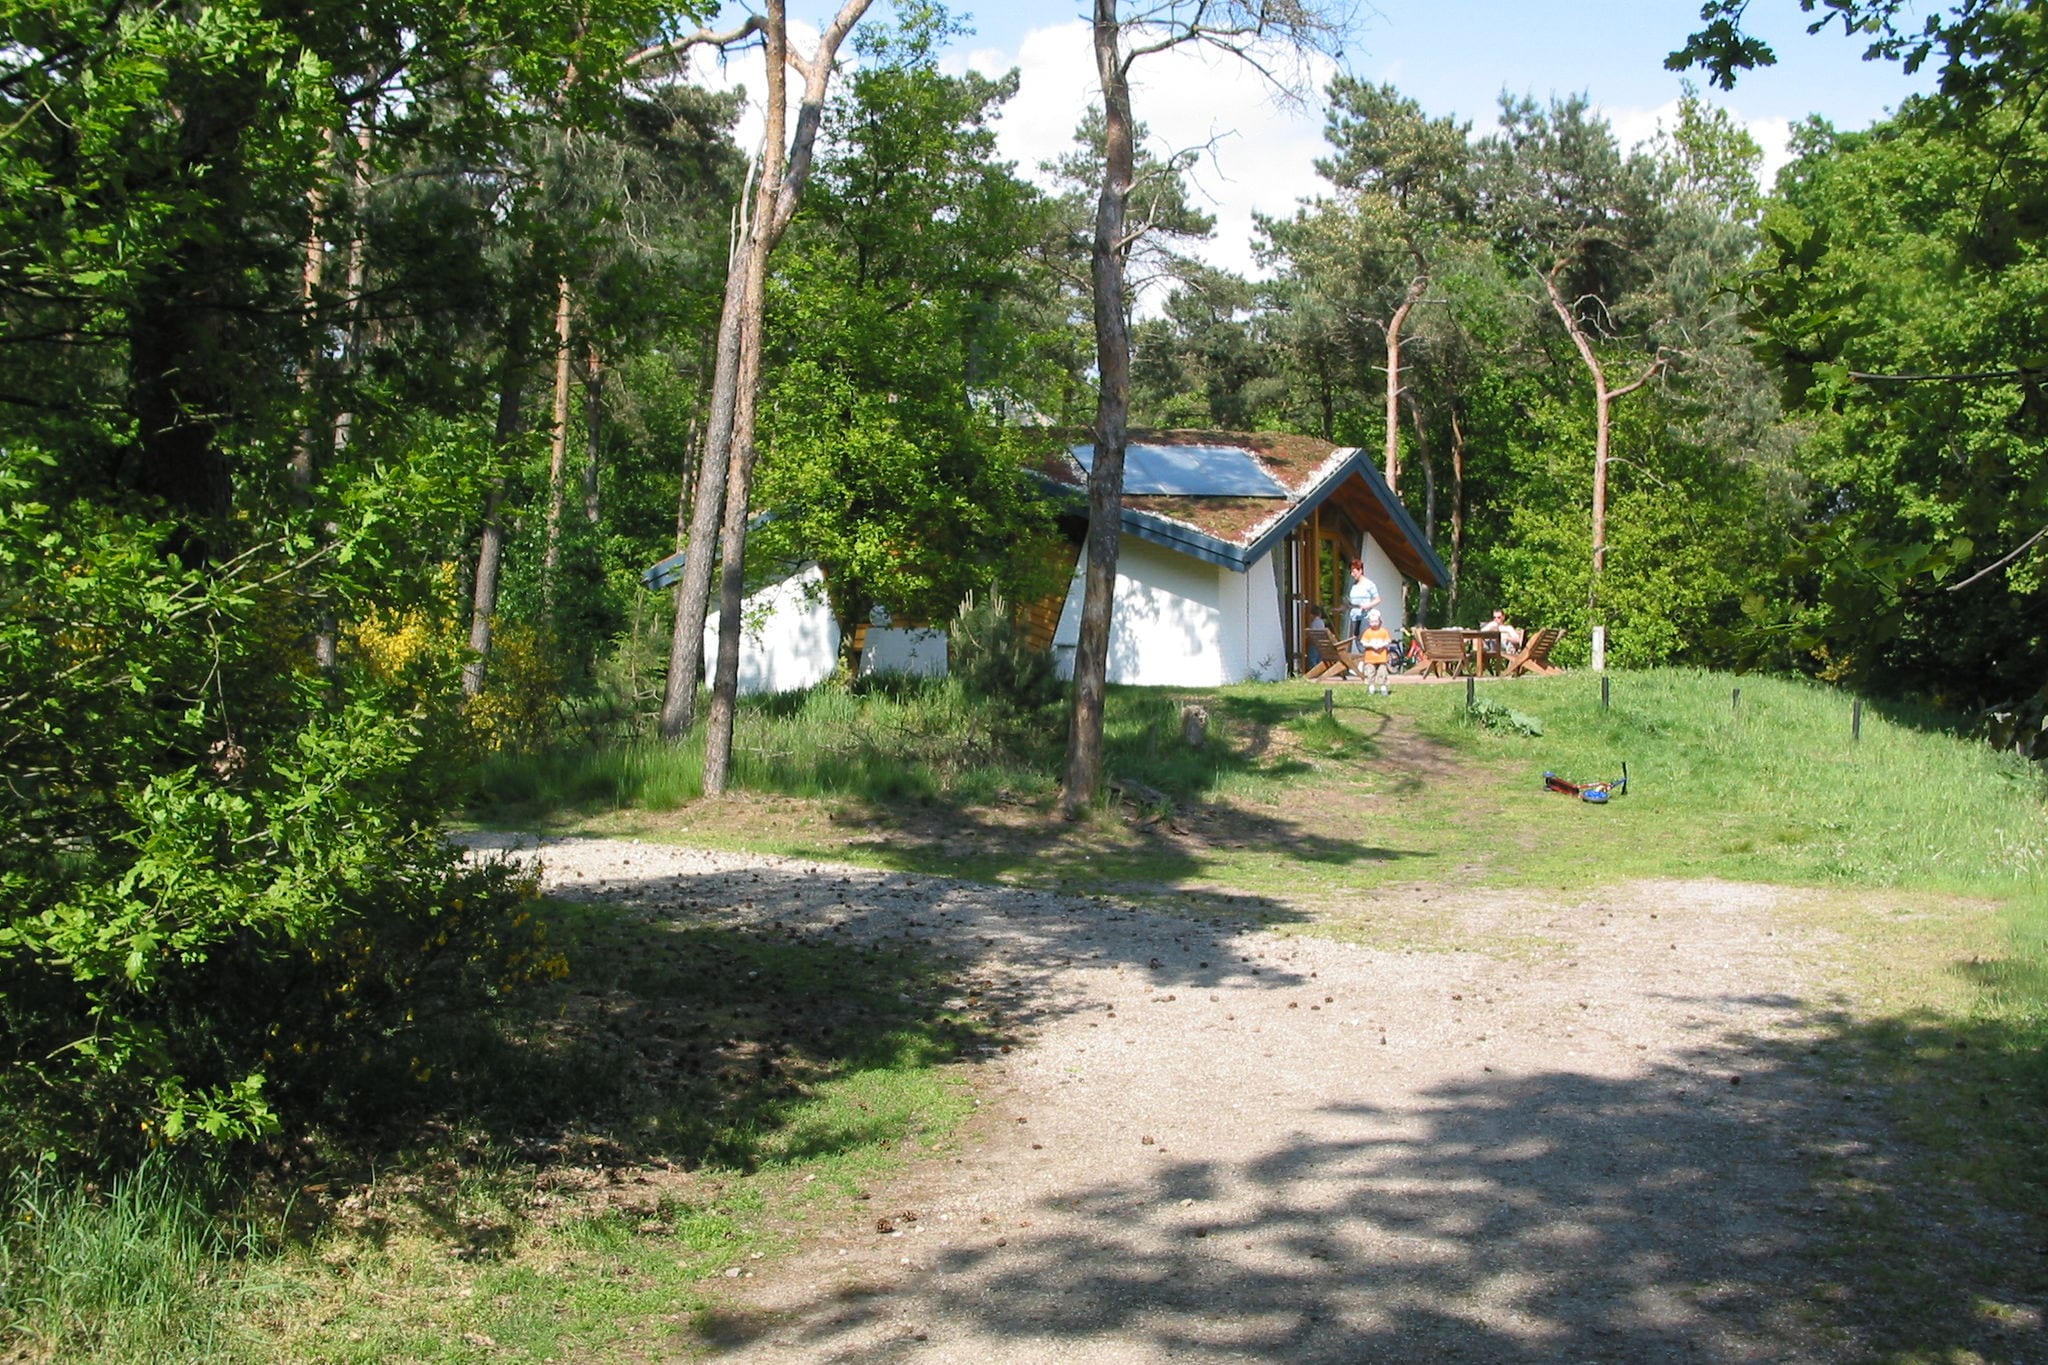 Ökologisches Ferienhaus mit Holzofen, in einem Ferienpark mitten in der Natur